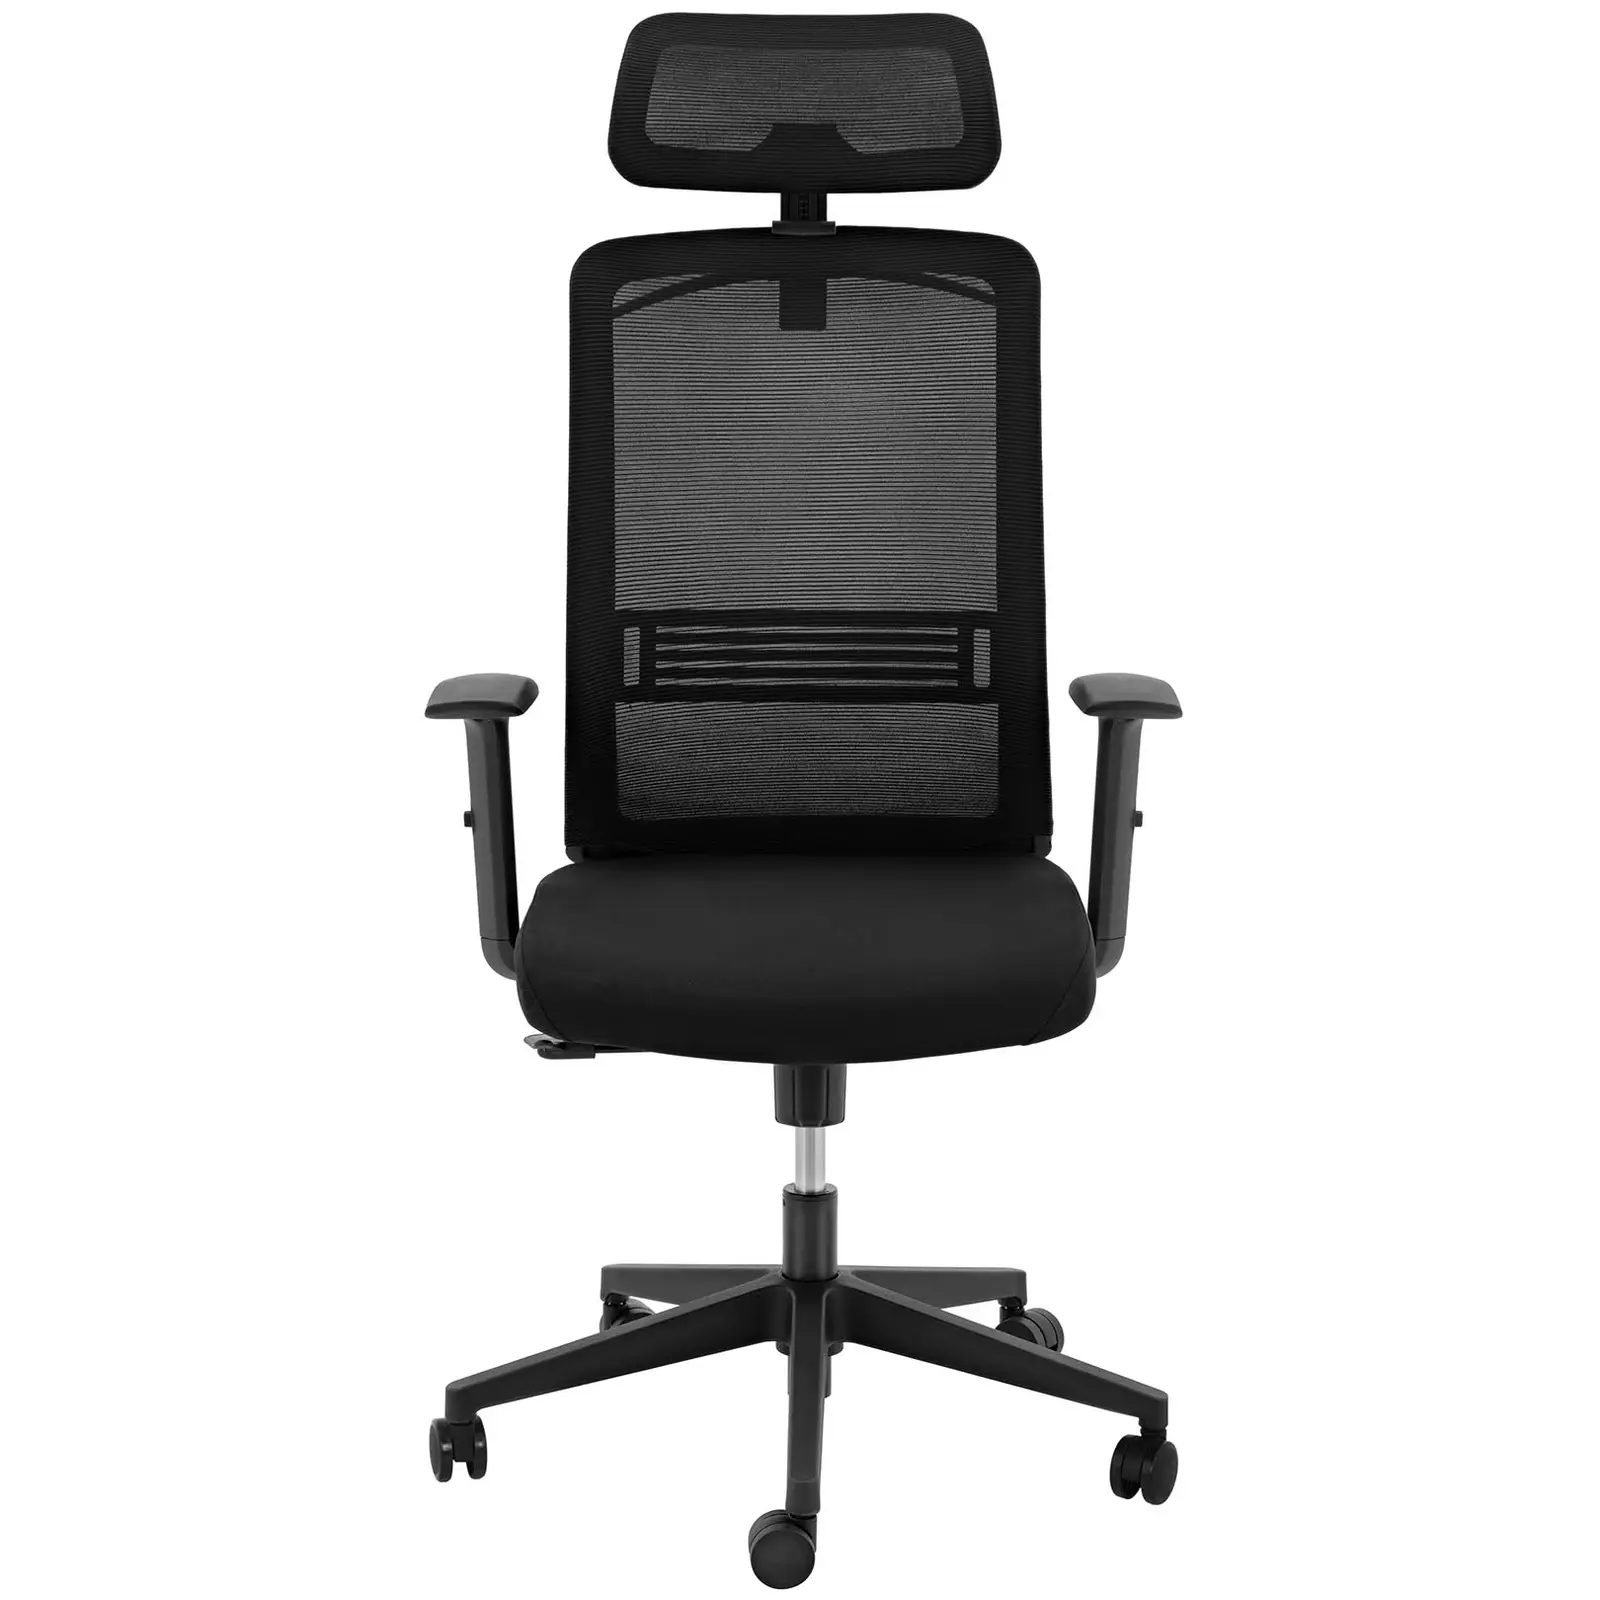 Bürostuhl - Netzrücken - Kopfstütze - 50 x 61 cm Sitz - bis 150 kg - schwarz